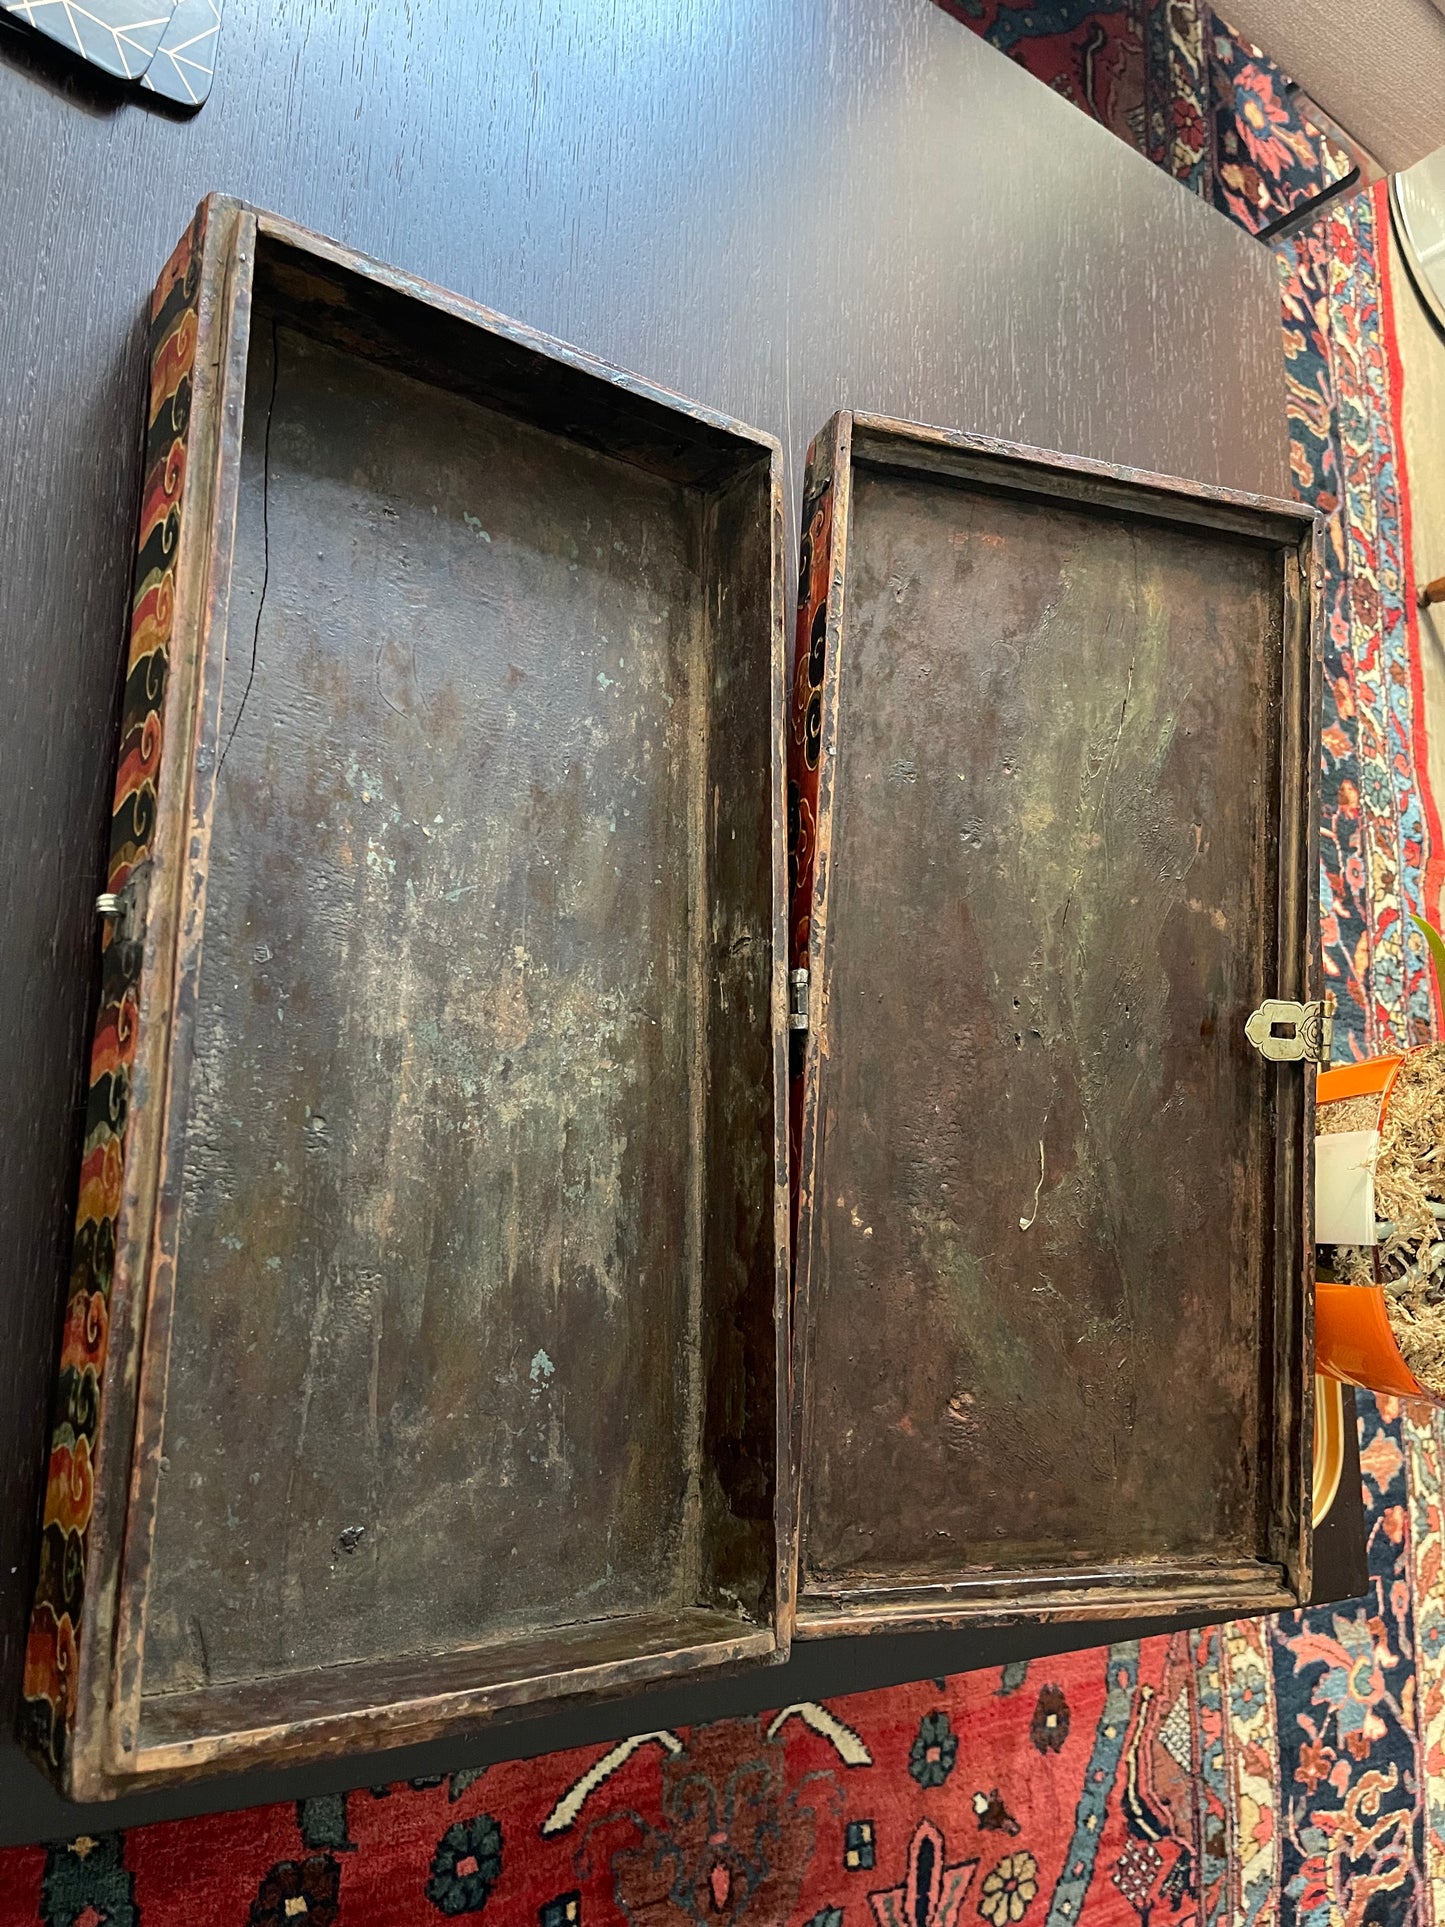 An antique rectangular flat Tibetan wood box